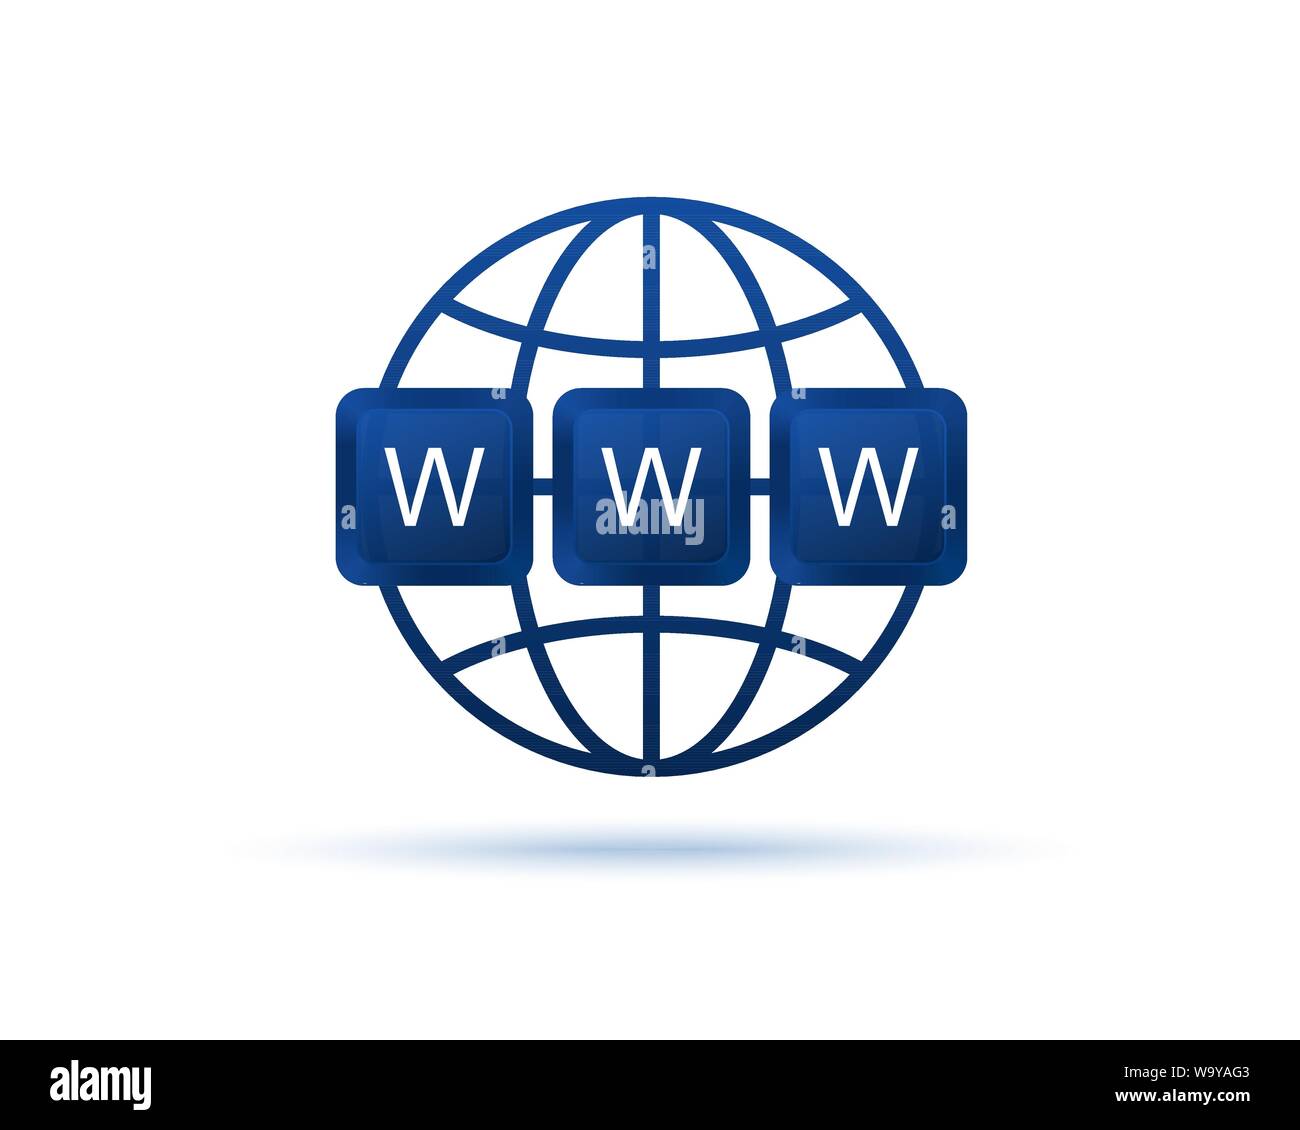 WWW icon. World Wide Web. Website symbol. Computer keyboard keys. Globe ...